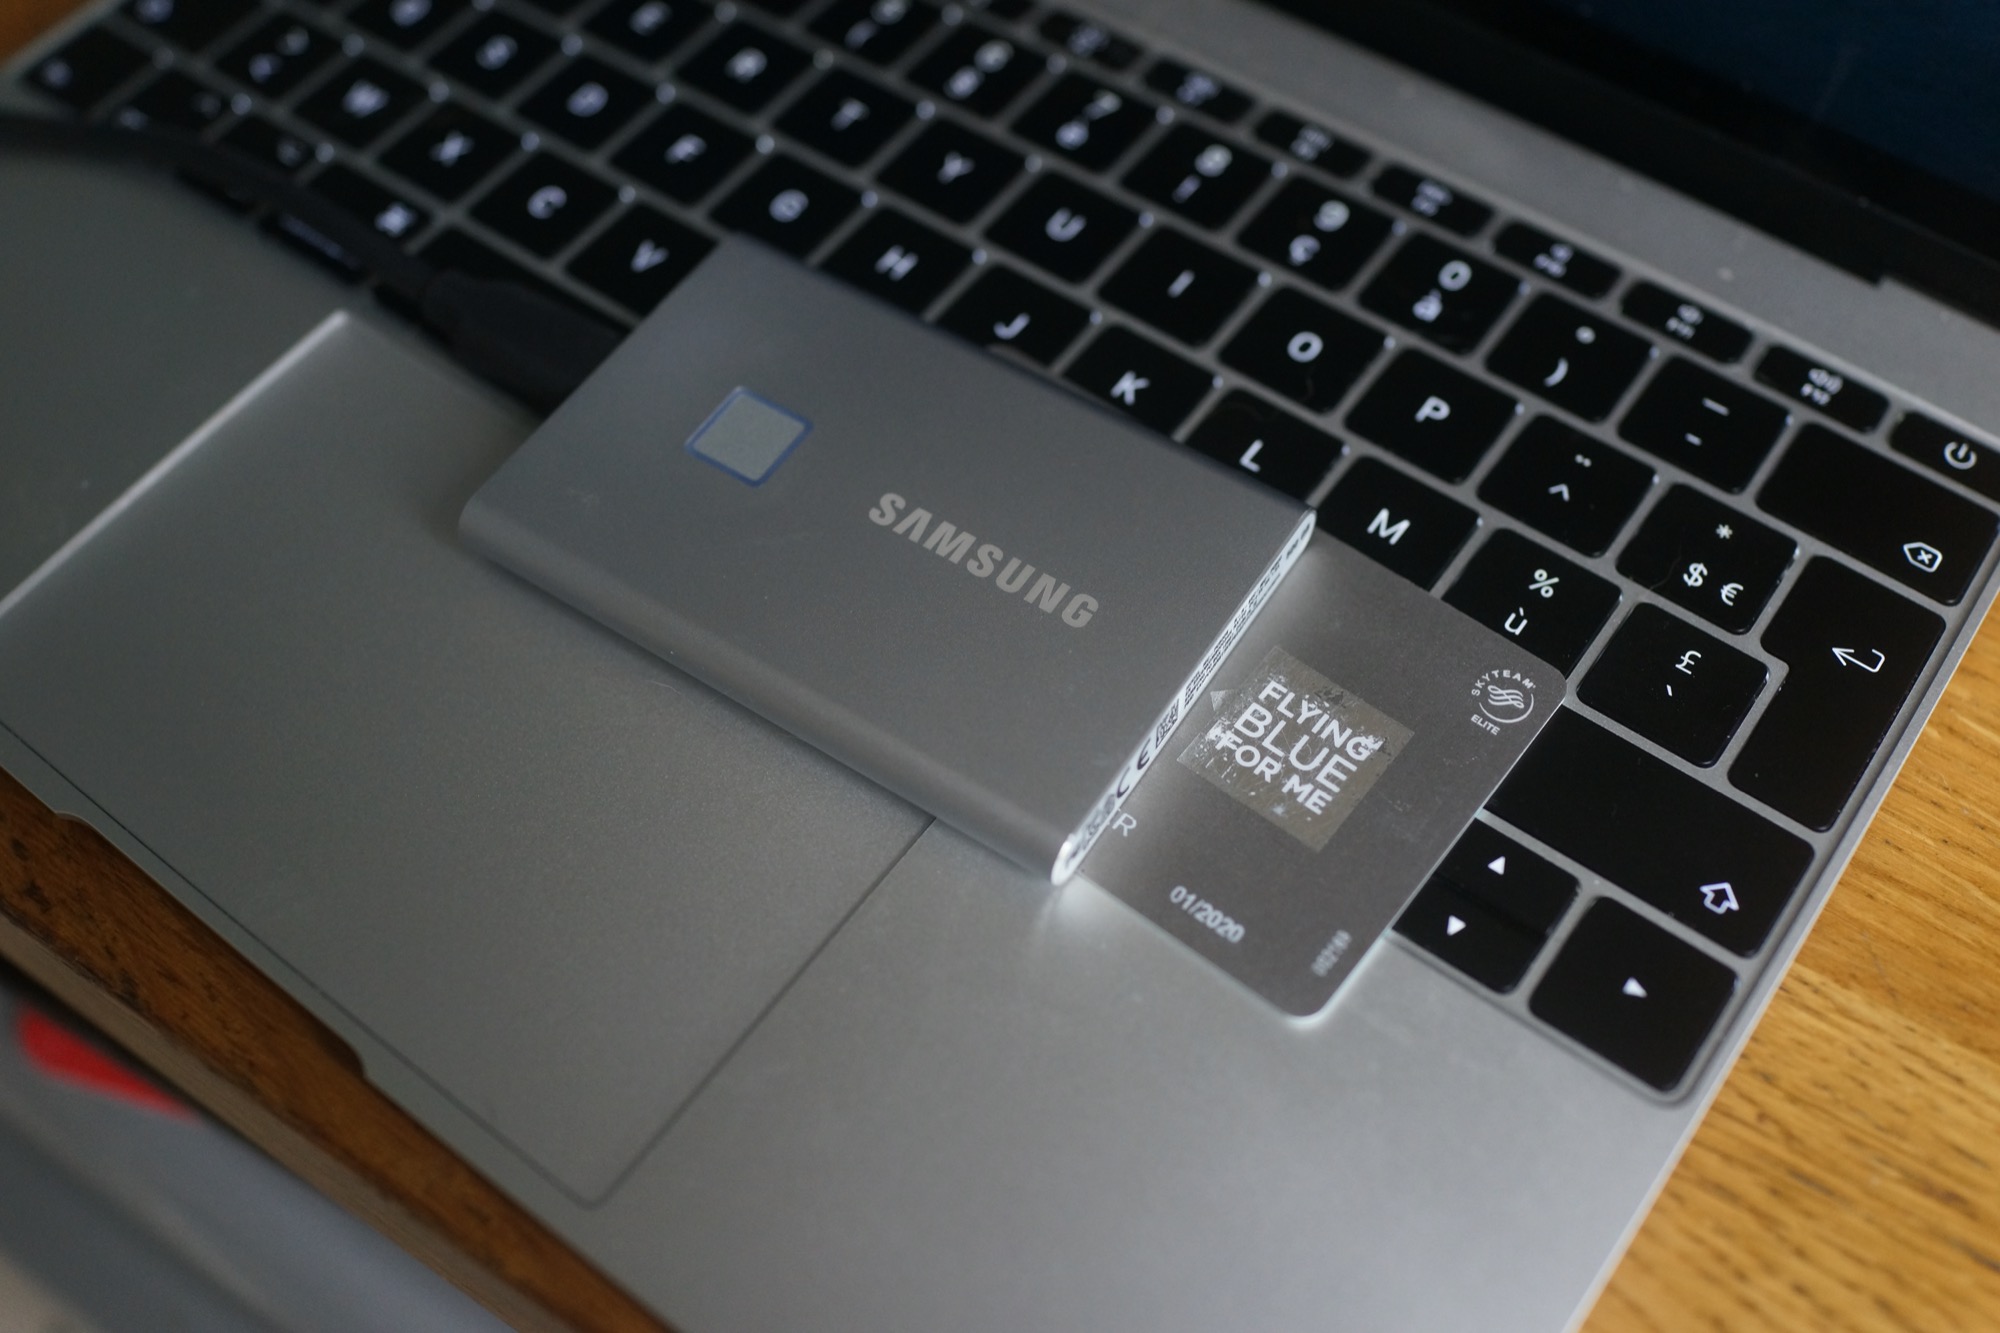 Samsung T5 1 To : meilleur prix, test et actualités - Les Numériques